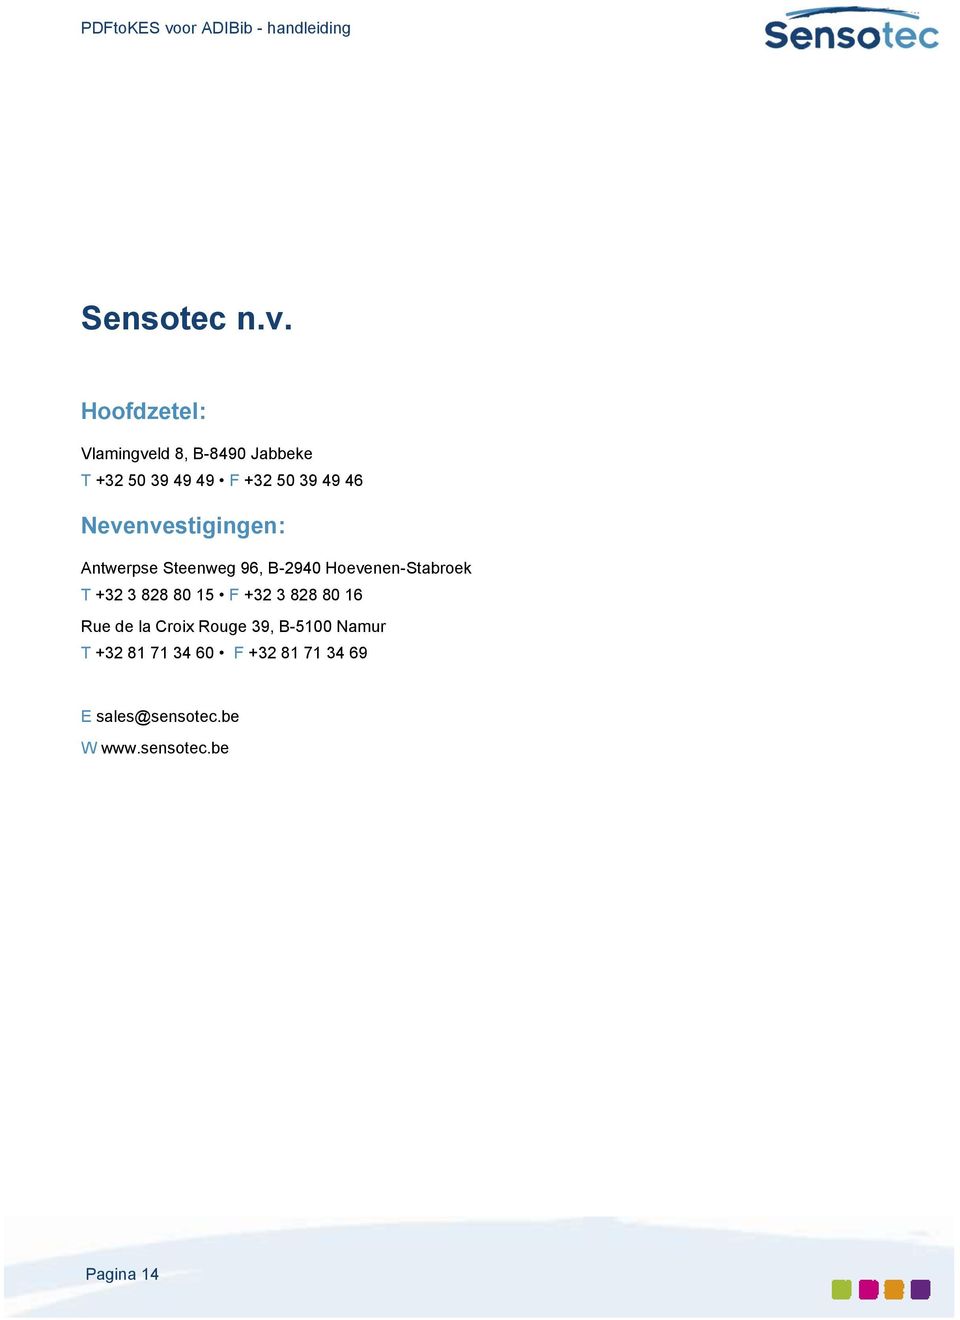 Nevenvestigingen: Antwerpse Steenweg 96, B-2940 Hoevenen-Stabroek T +32 3 828